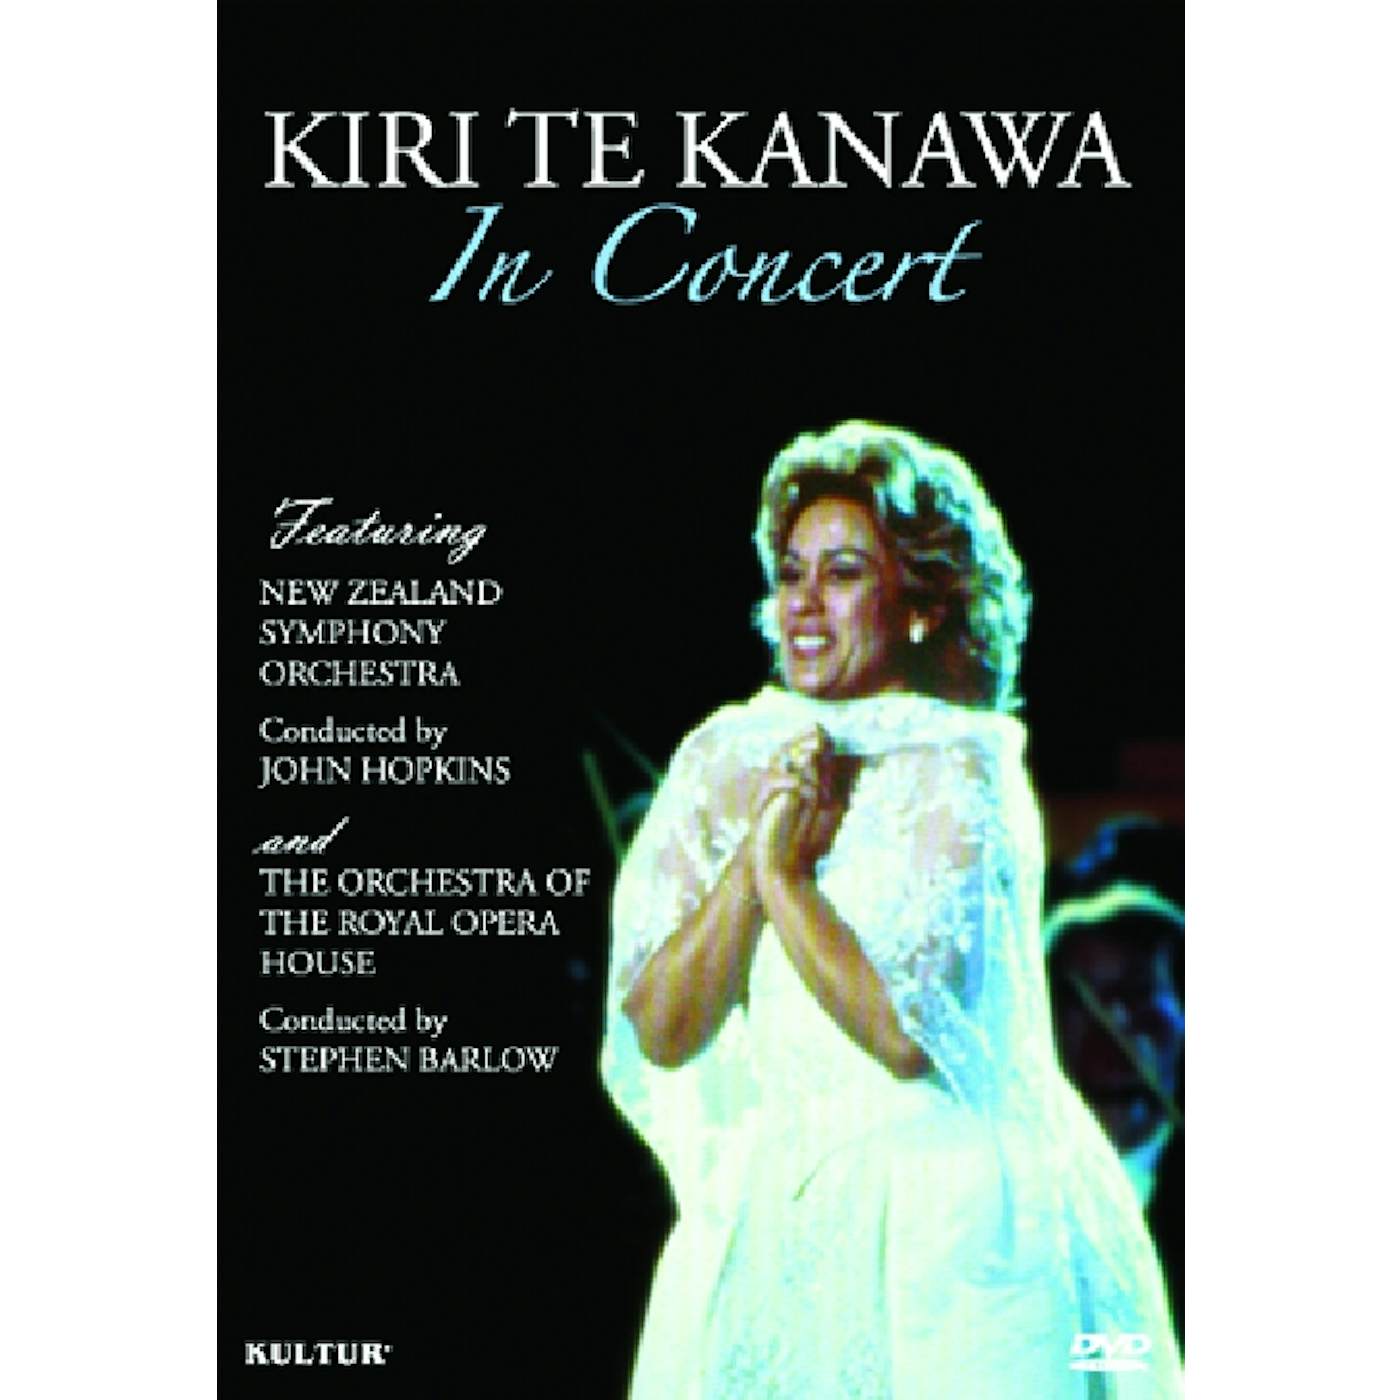 KIRI TE KANAWA IN CONCERT DVD